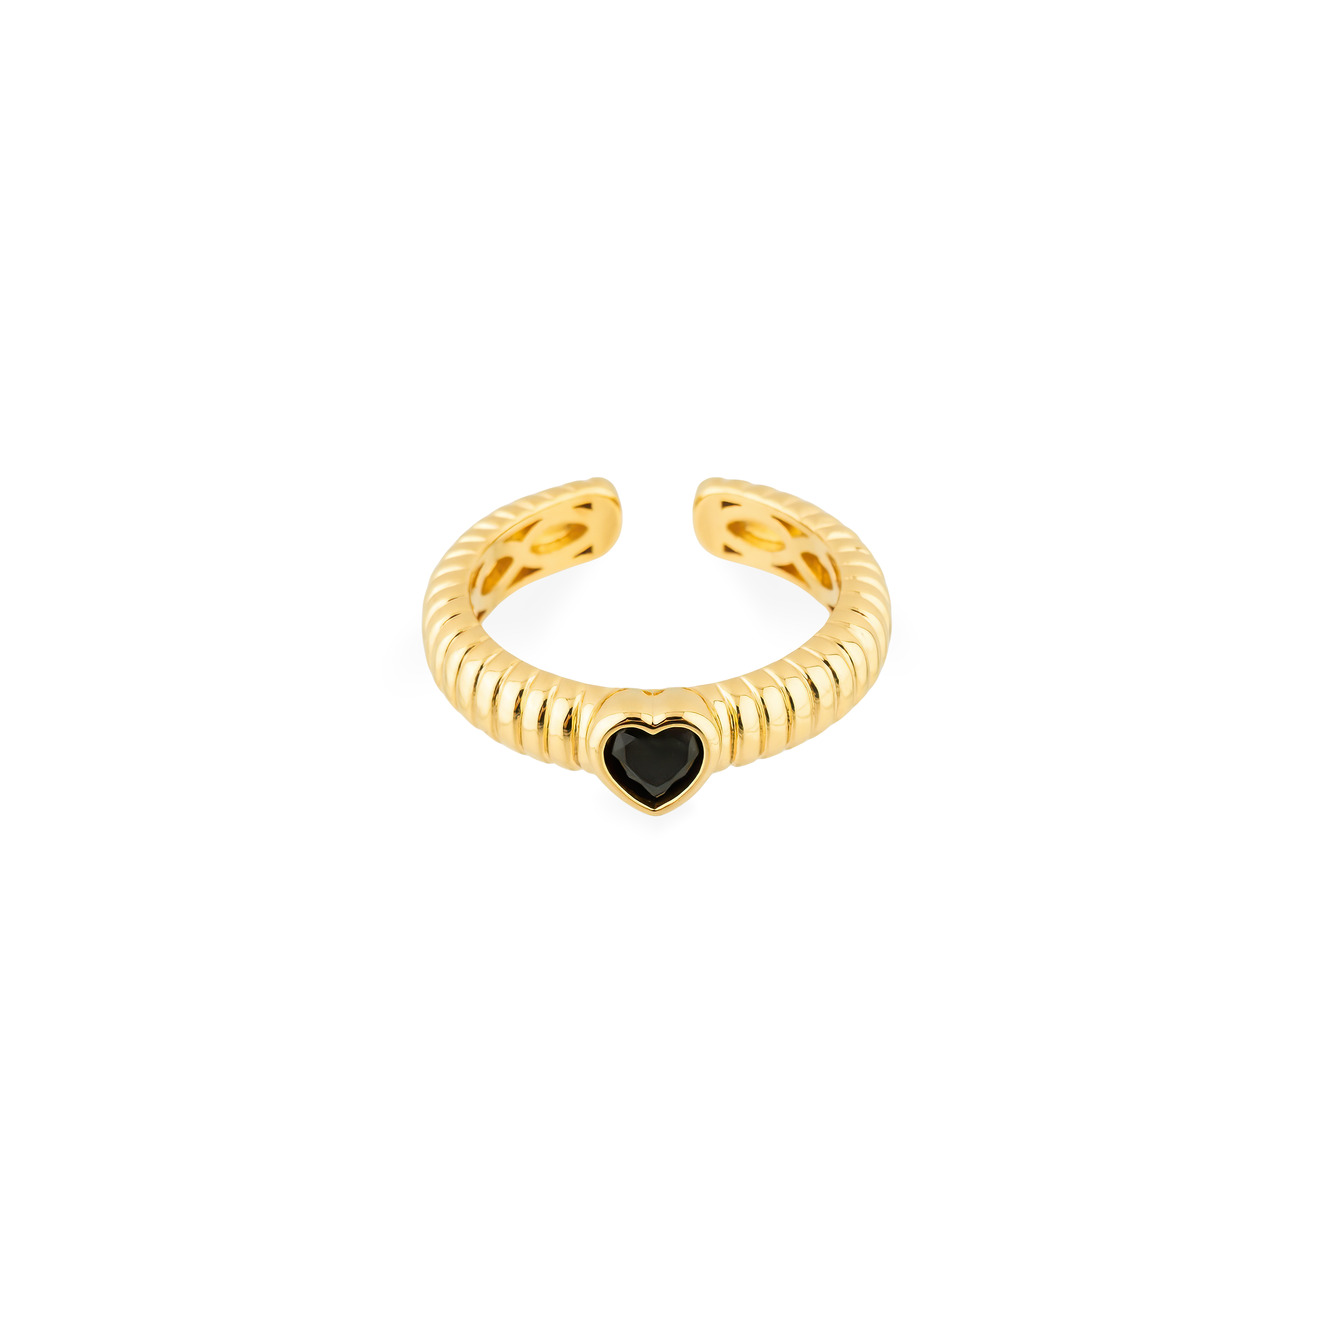 Herald Percy Золотистое фигурное кольцо с черным сердцем herald percy серебристое фигурное кольцо с красным сердцем